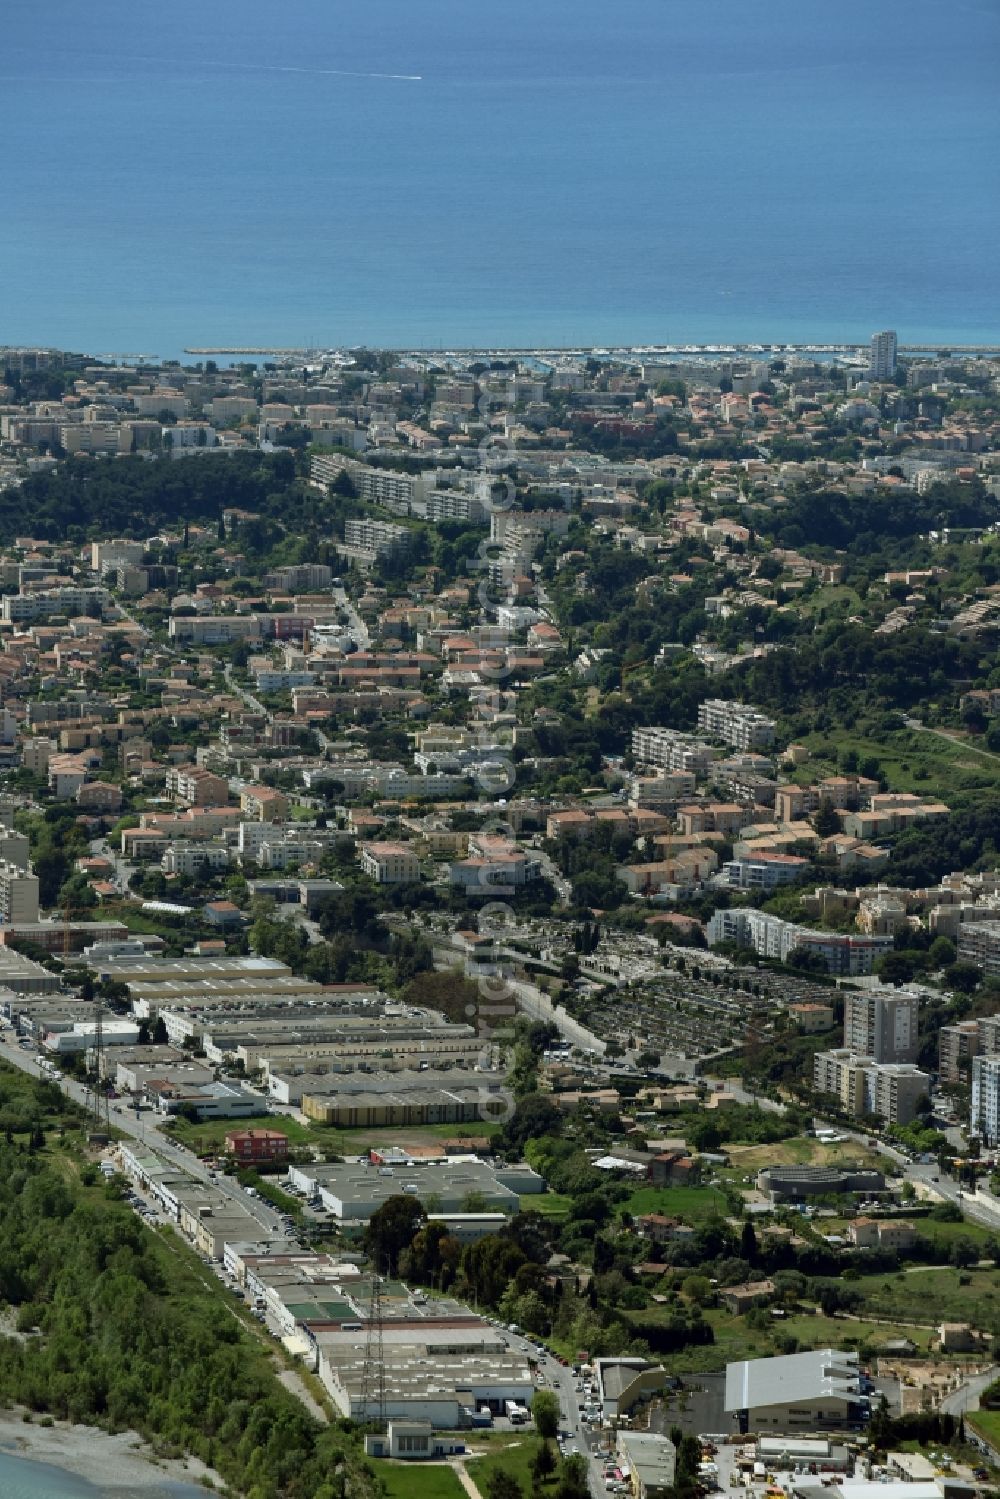 Aerial image Nizza - Nice - District Saint-Laurent-du-Var in the city in Nizza Saint-Laurent-du-Var in Provence-Alpes-Cote d'Azur, France